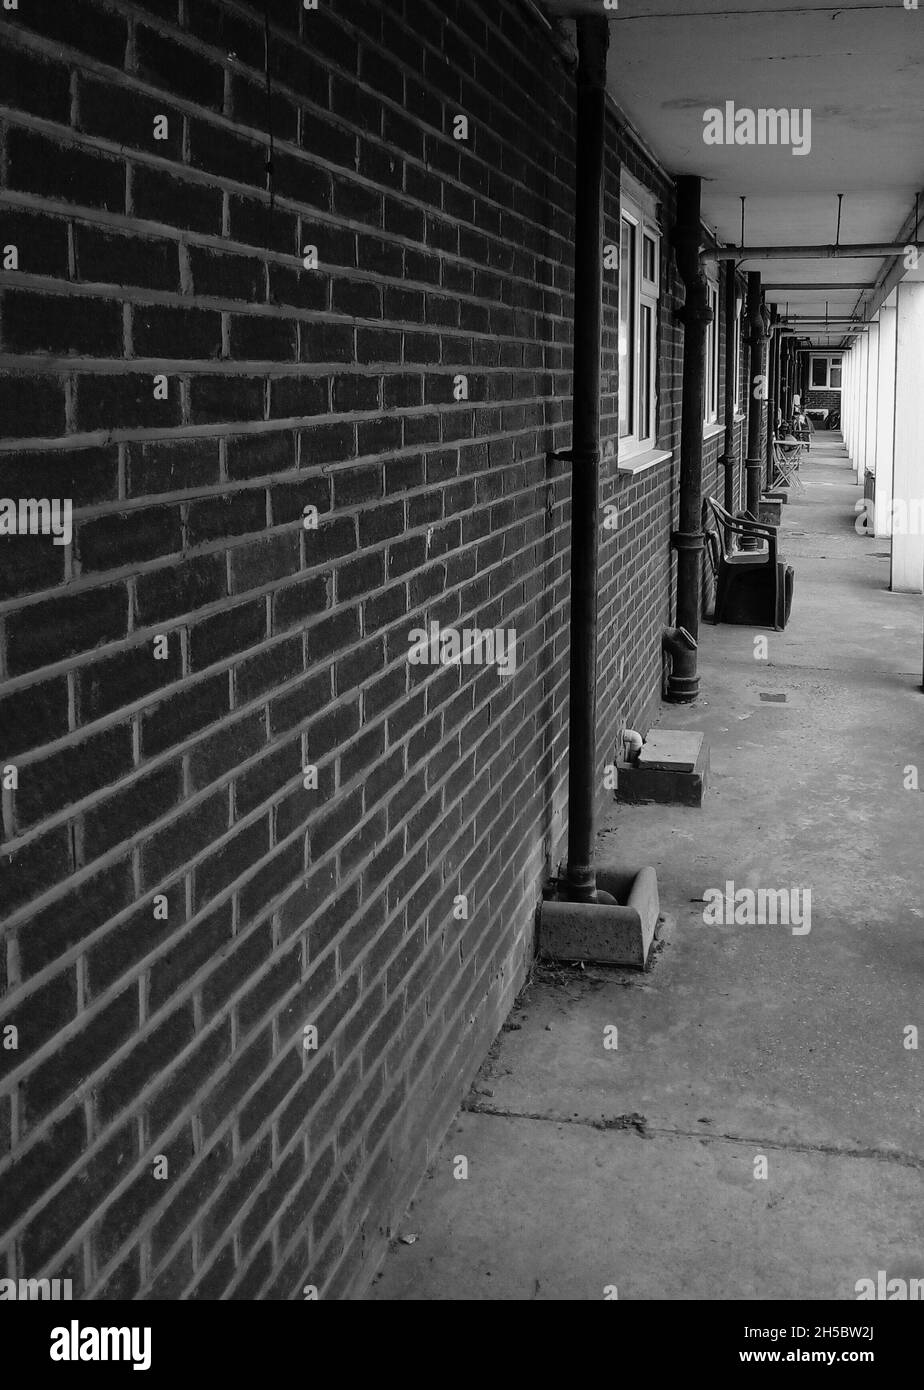 LONDRA, REGNO UNITO - 02 maggio 2020: Un'immagine in scala di grigi del corridoio di alloggiamento del Consiglio con le linee convergenti del muratore Foto Stock